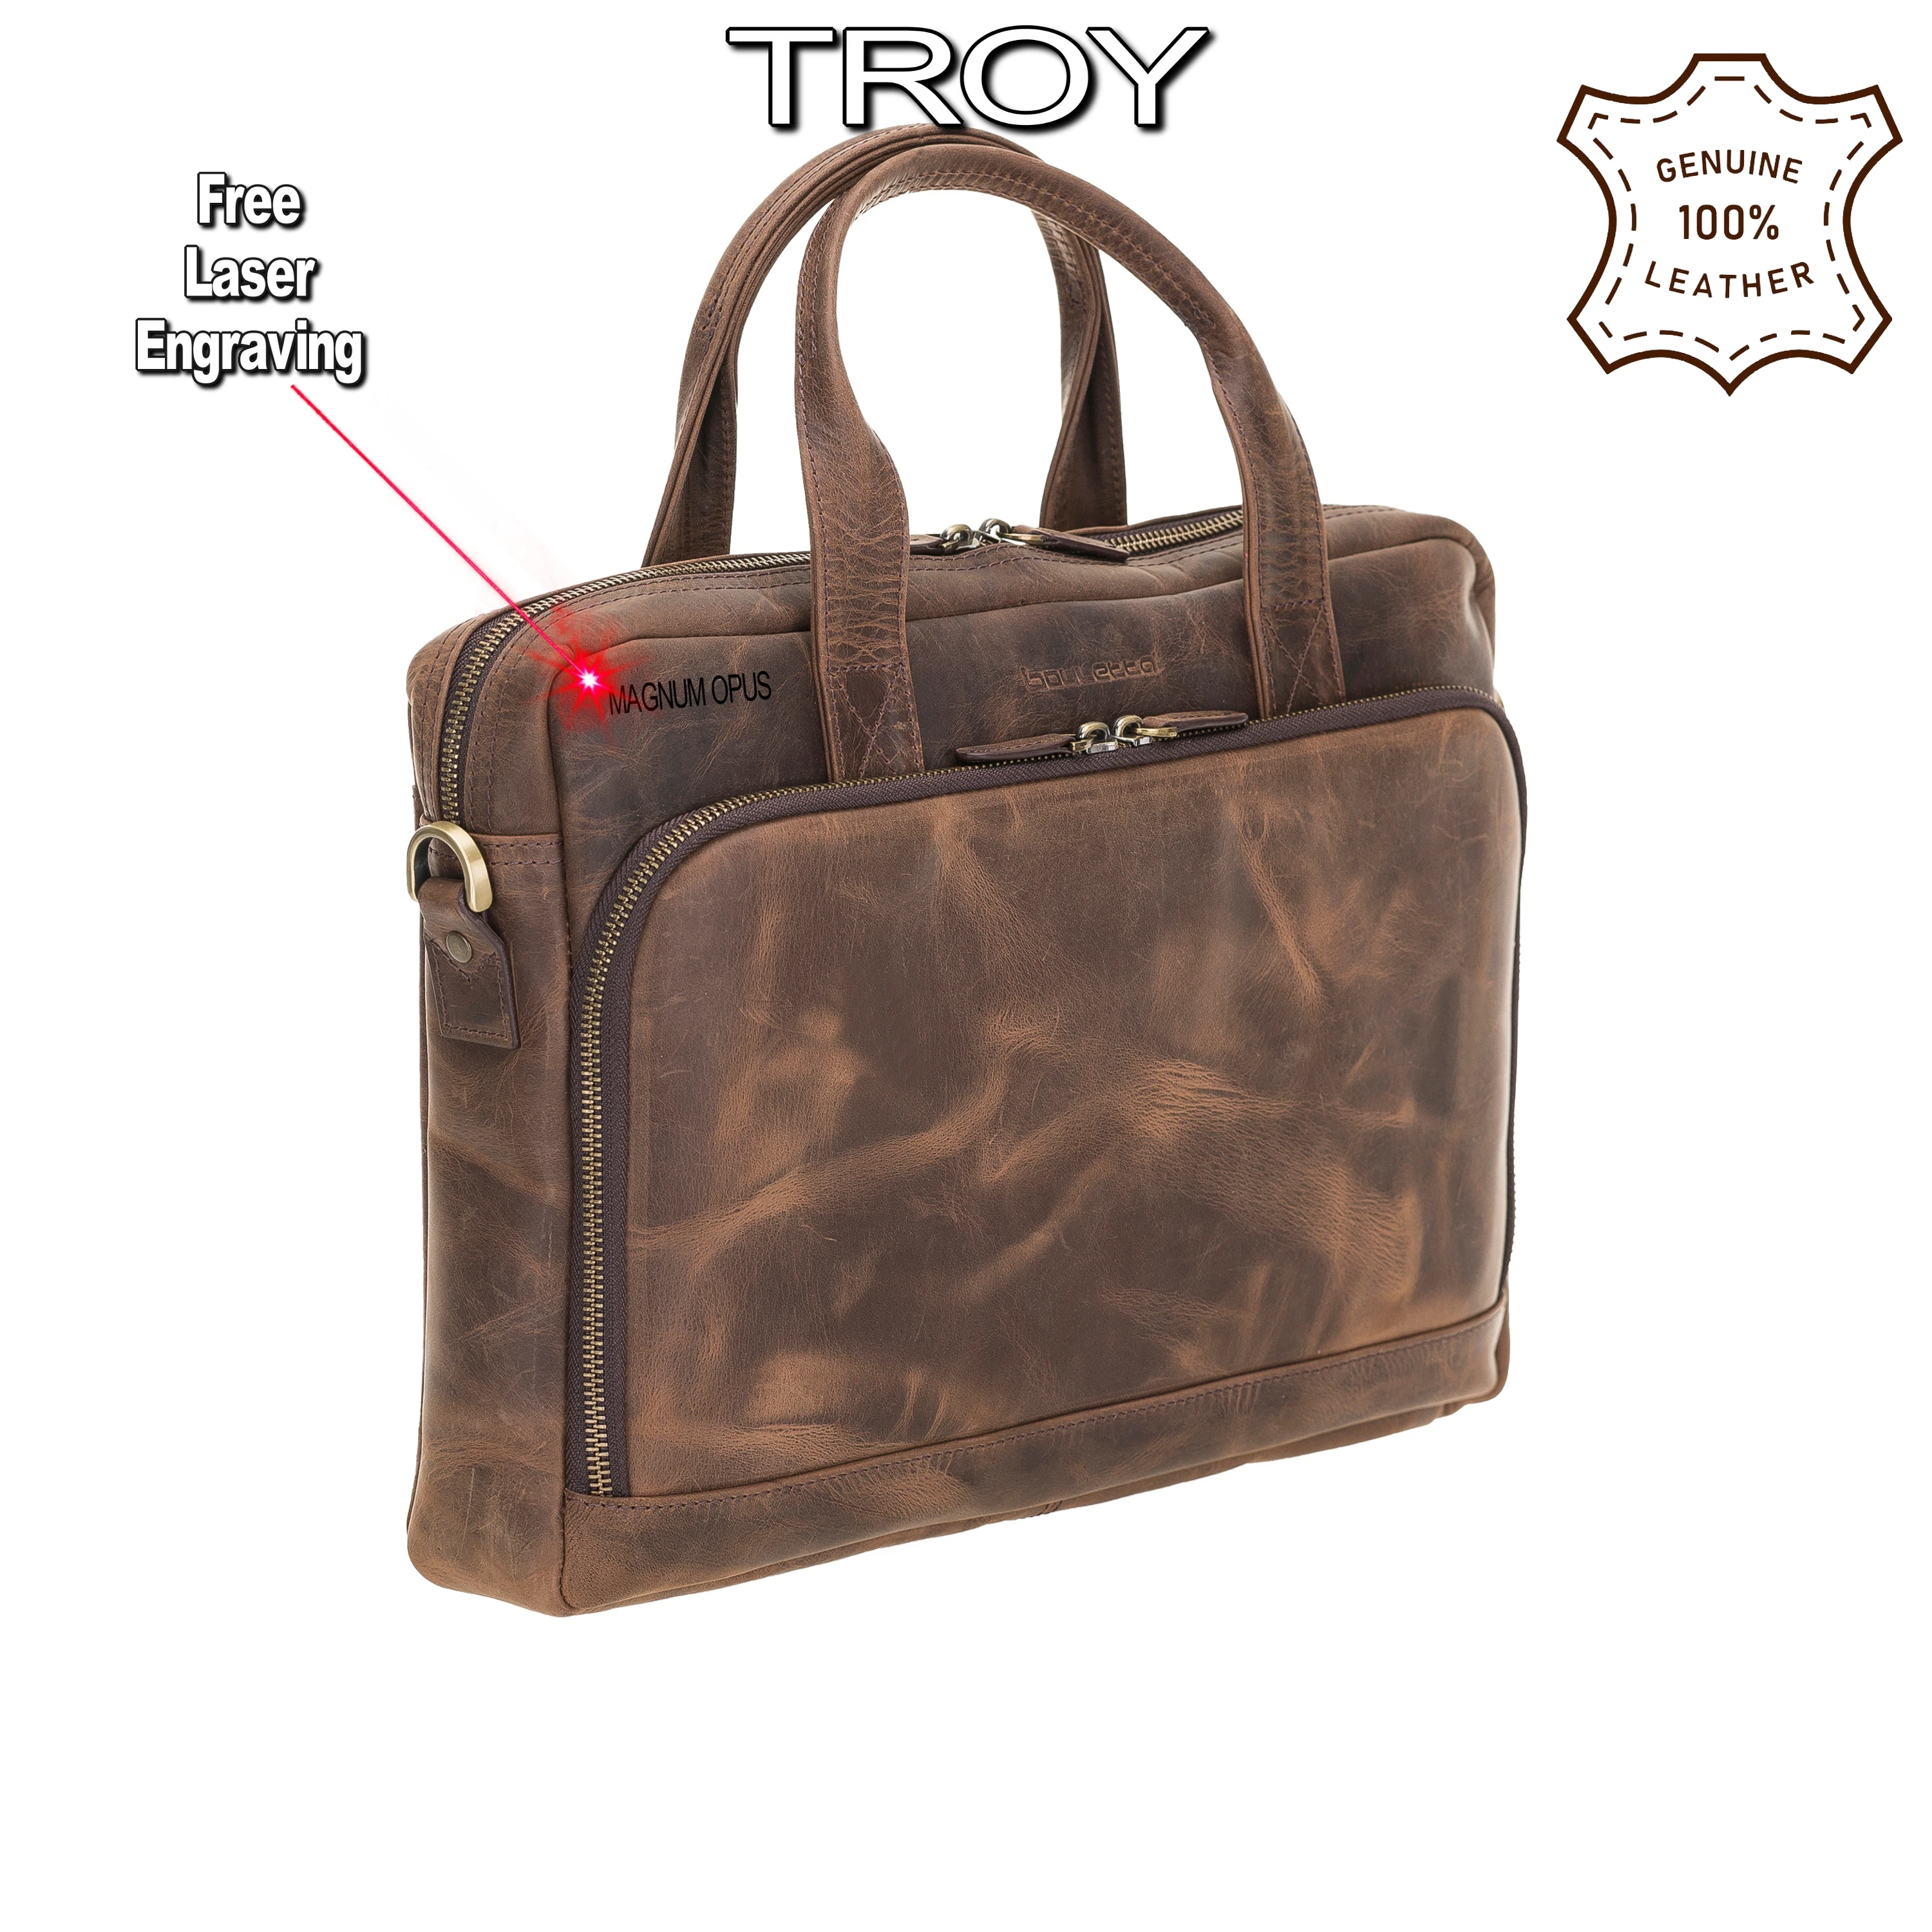 Handmade Genuine Leather Briefcase Laptop Notebook Business Travel Durable Bag Handbag with Shoulder Strap RFID Elegant 13